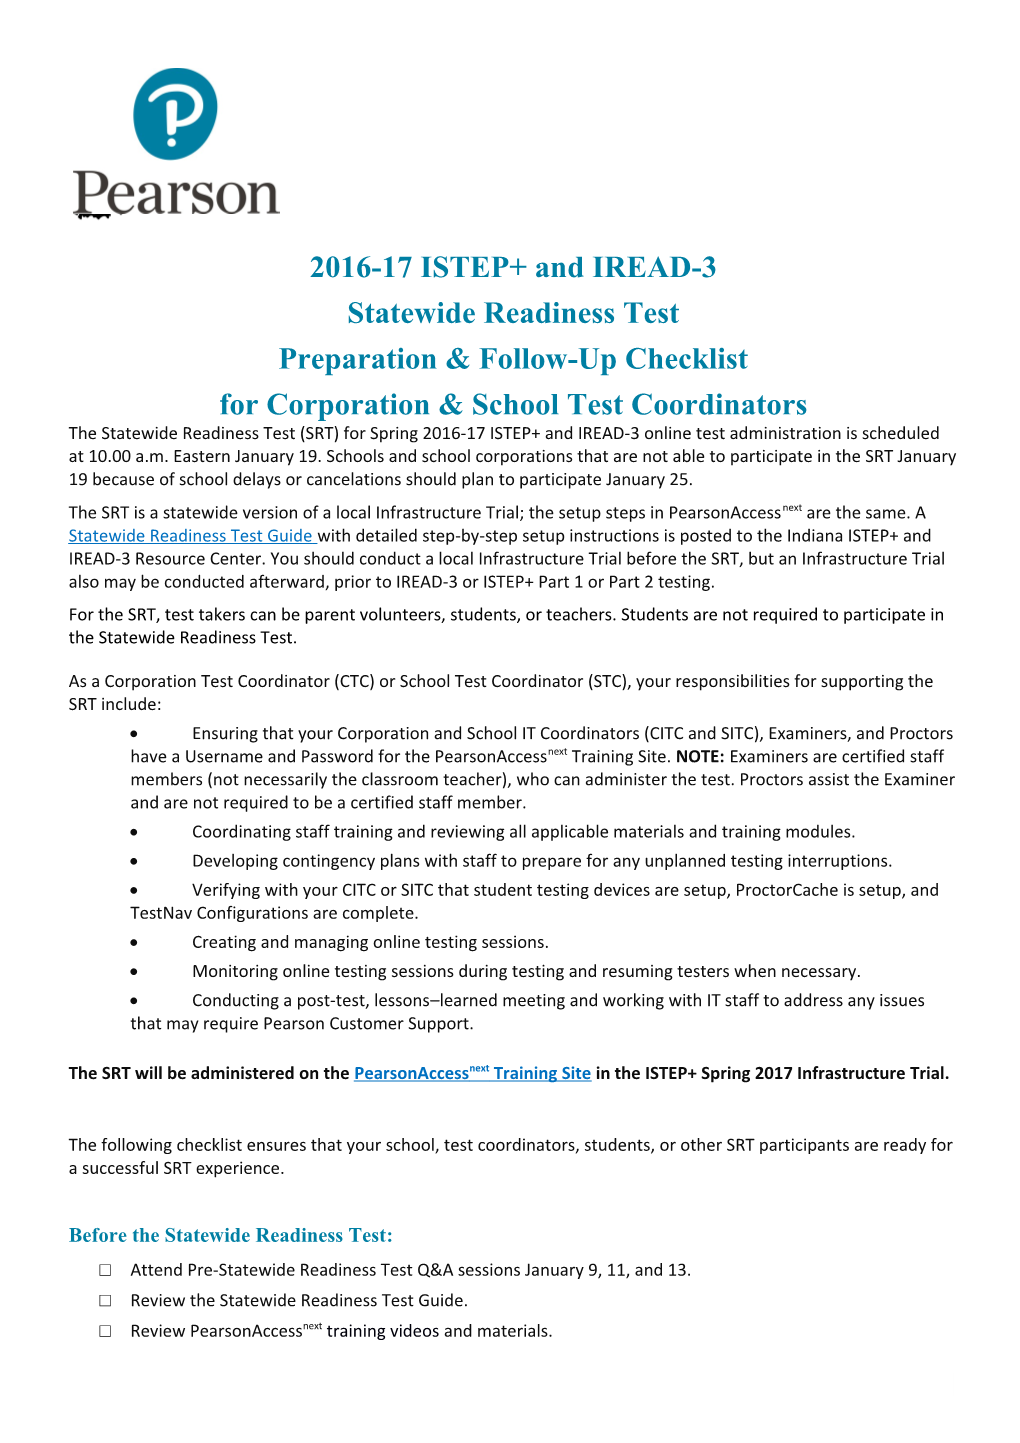 For Corporation & School Test Coordinators